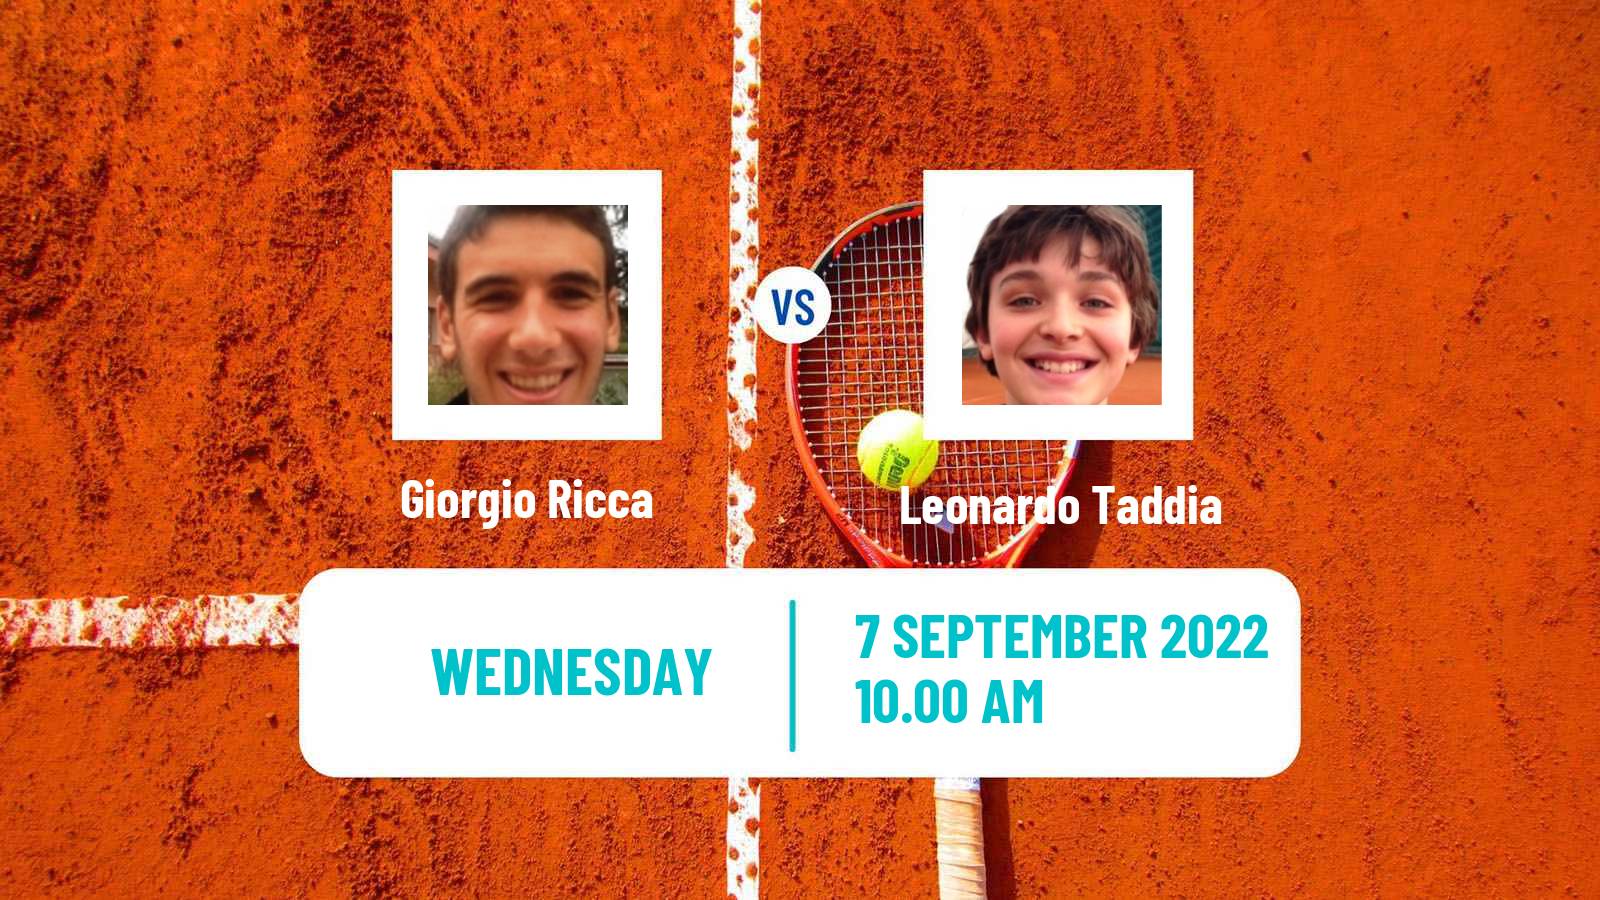 Tennis ITF Tournaments Giorgio Ricca - Leonardo Taddia